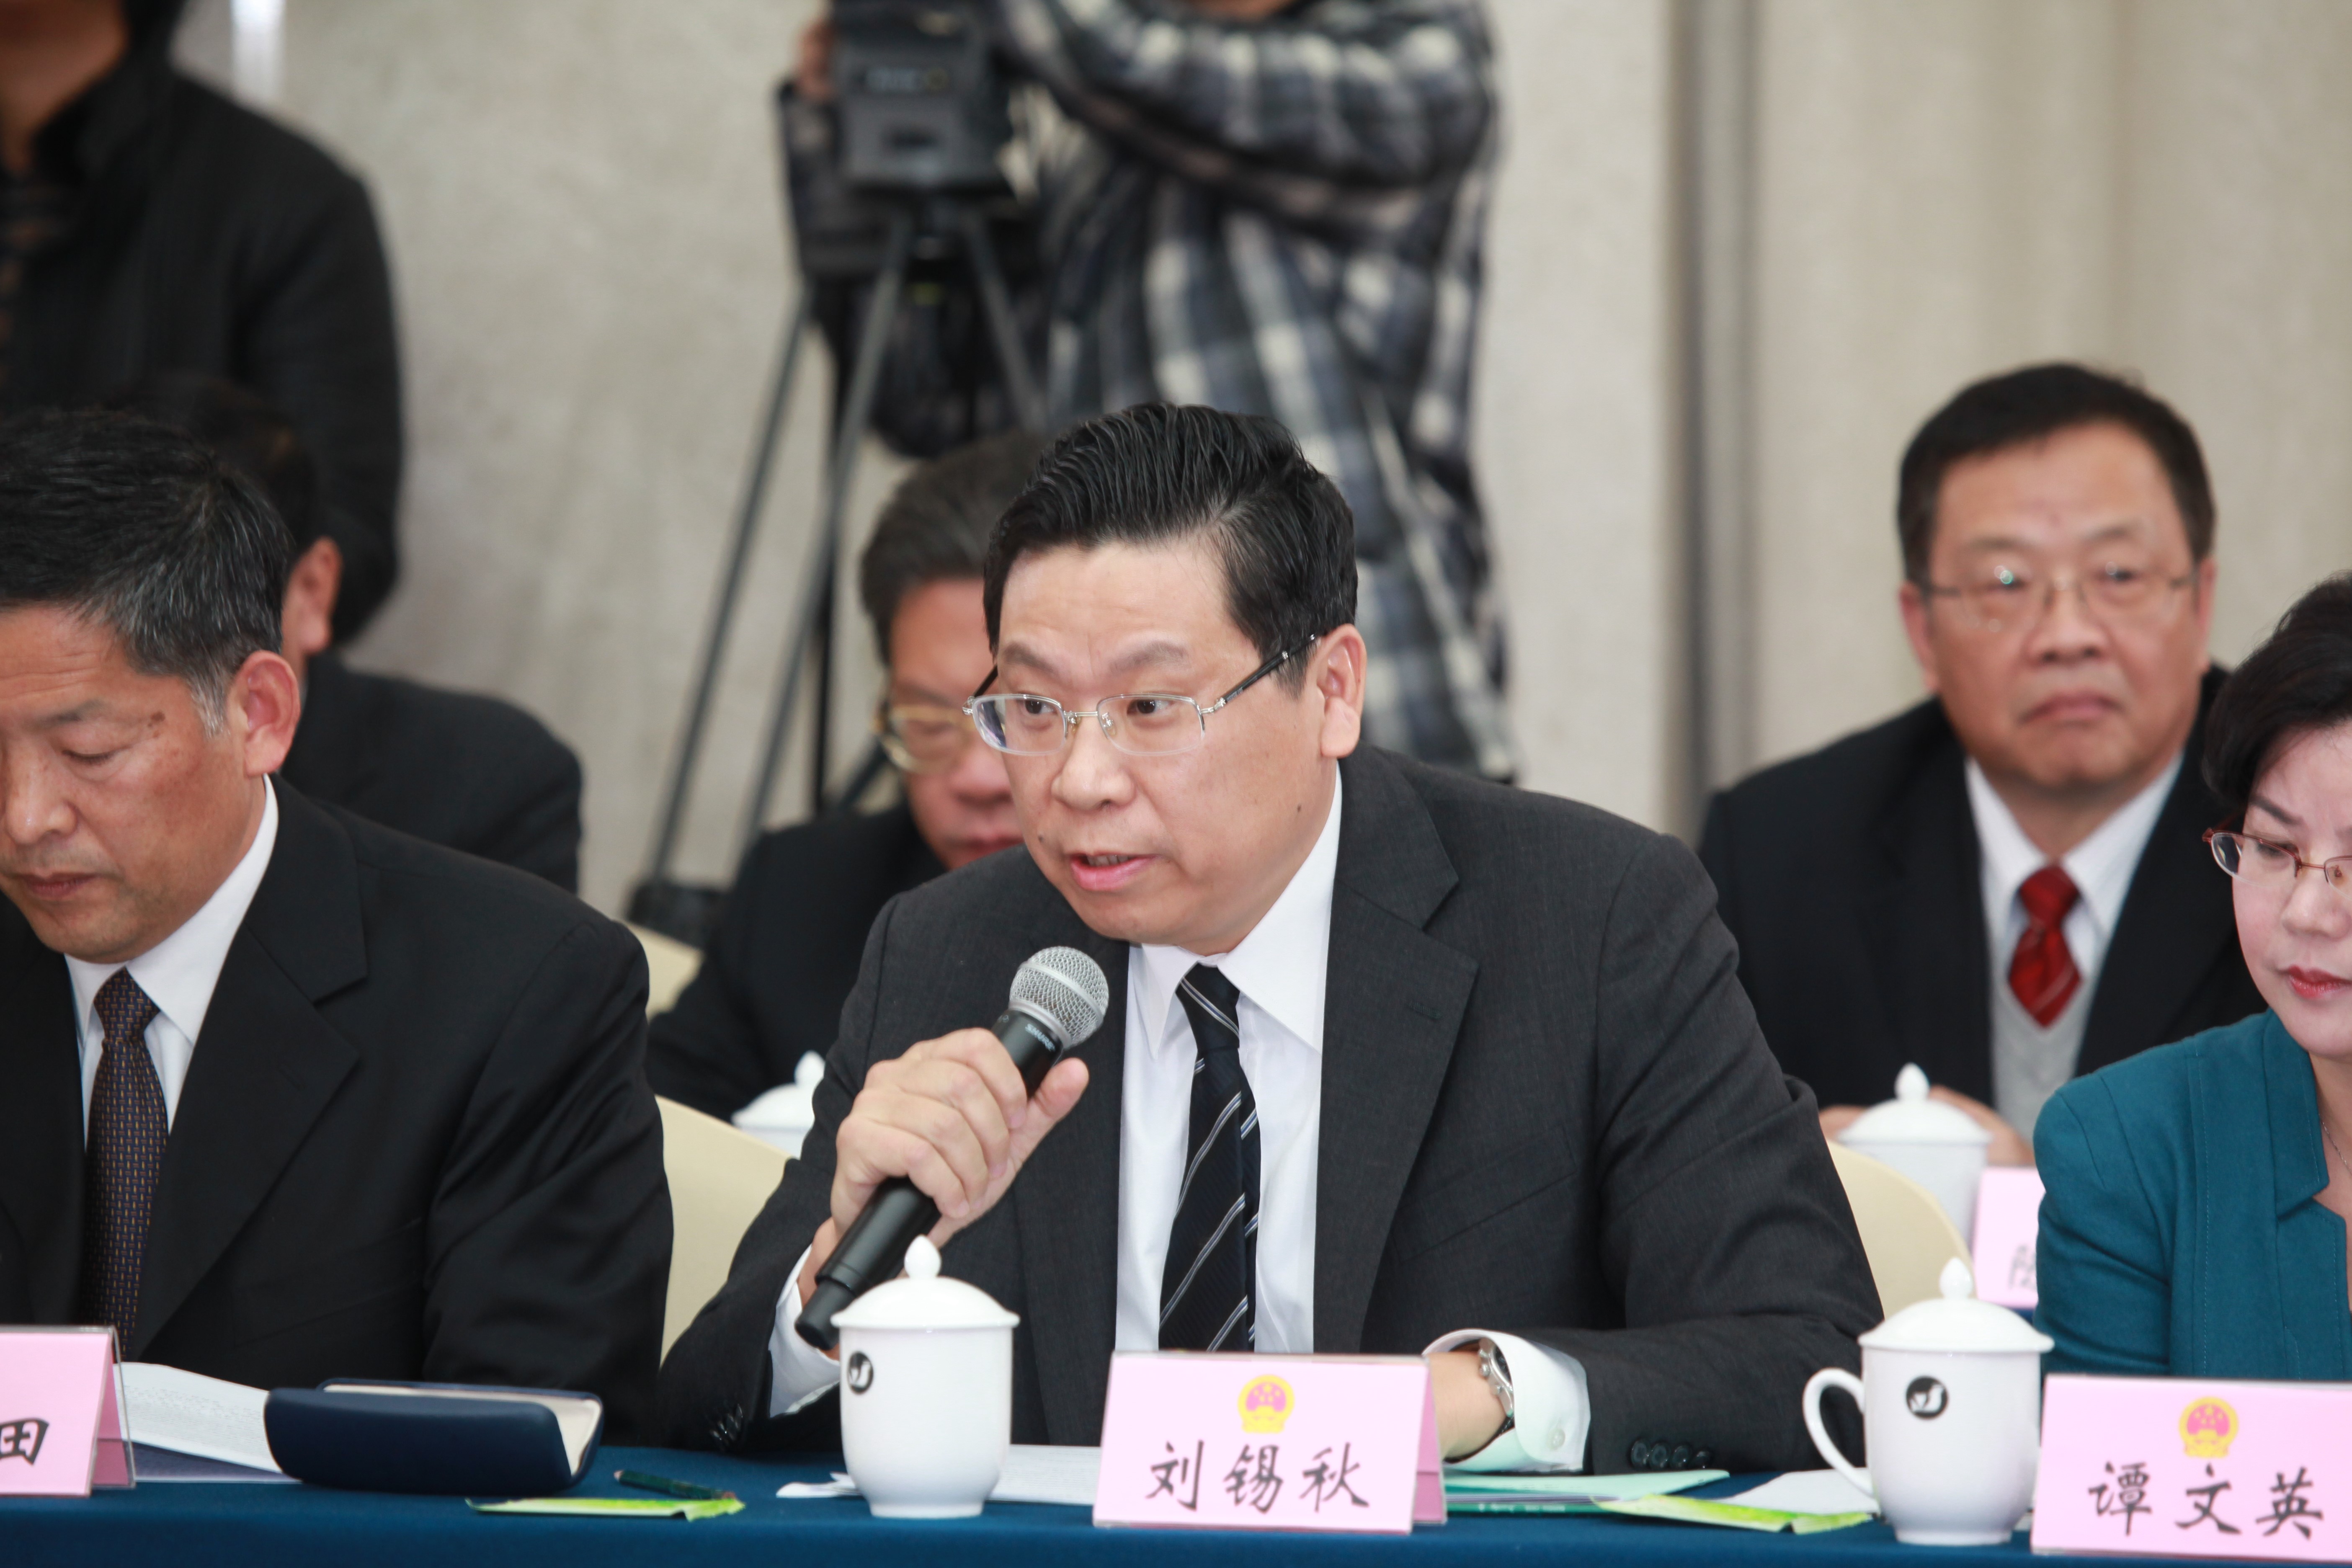 照片注释：2013年刘锡秋校长出席江西省人大常委会电视直播问政活动。